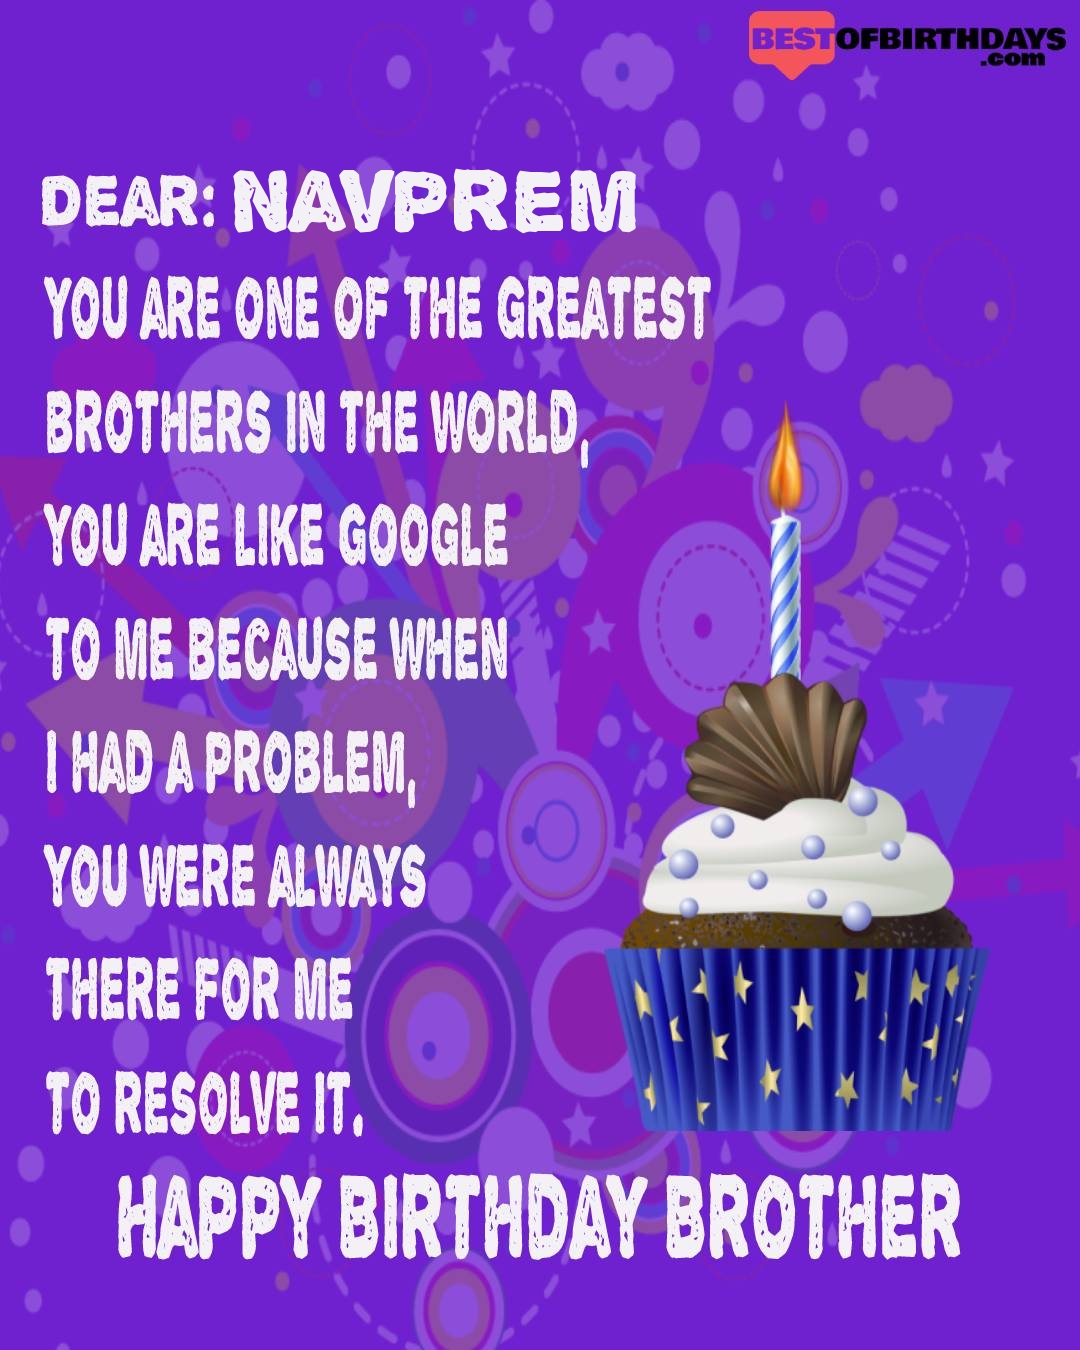 Happy birthday navprem bhai brother bro